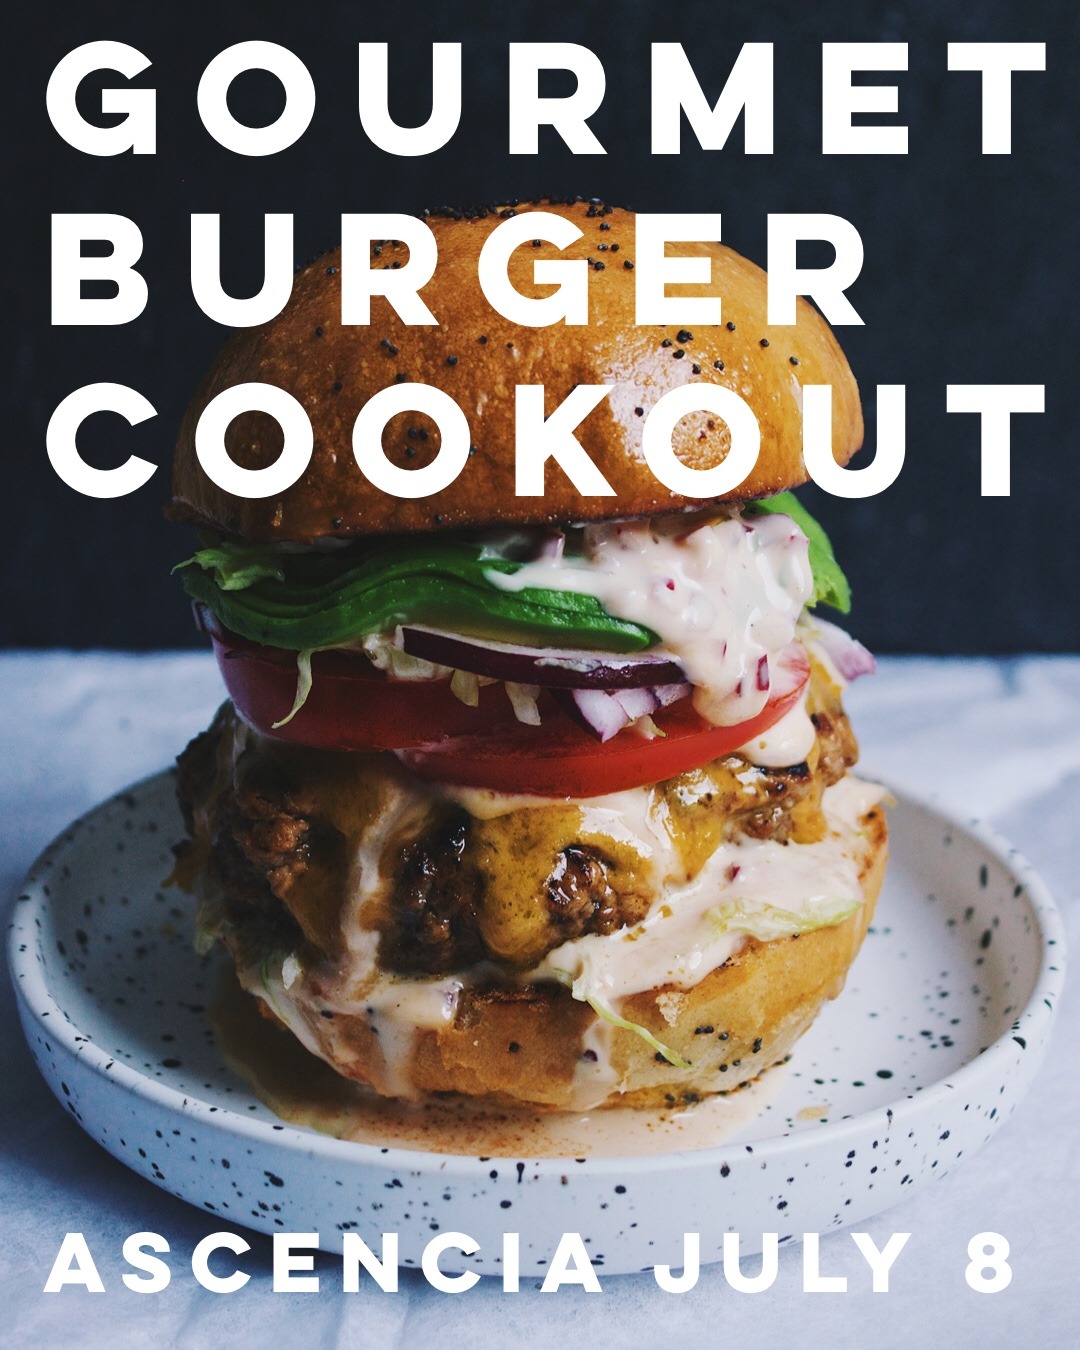 Gourmet Burger Cookout Creative